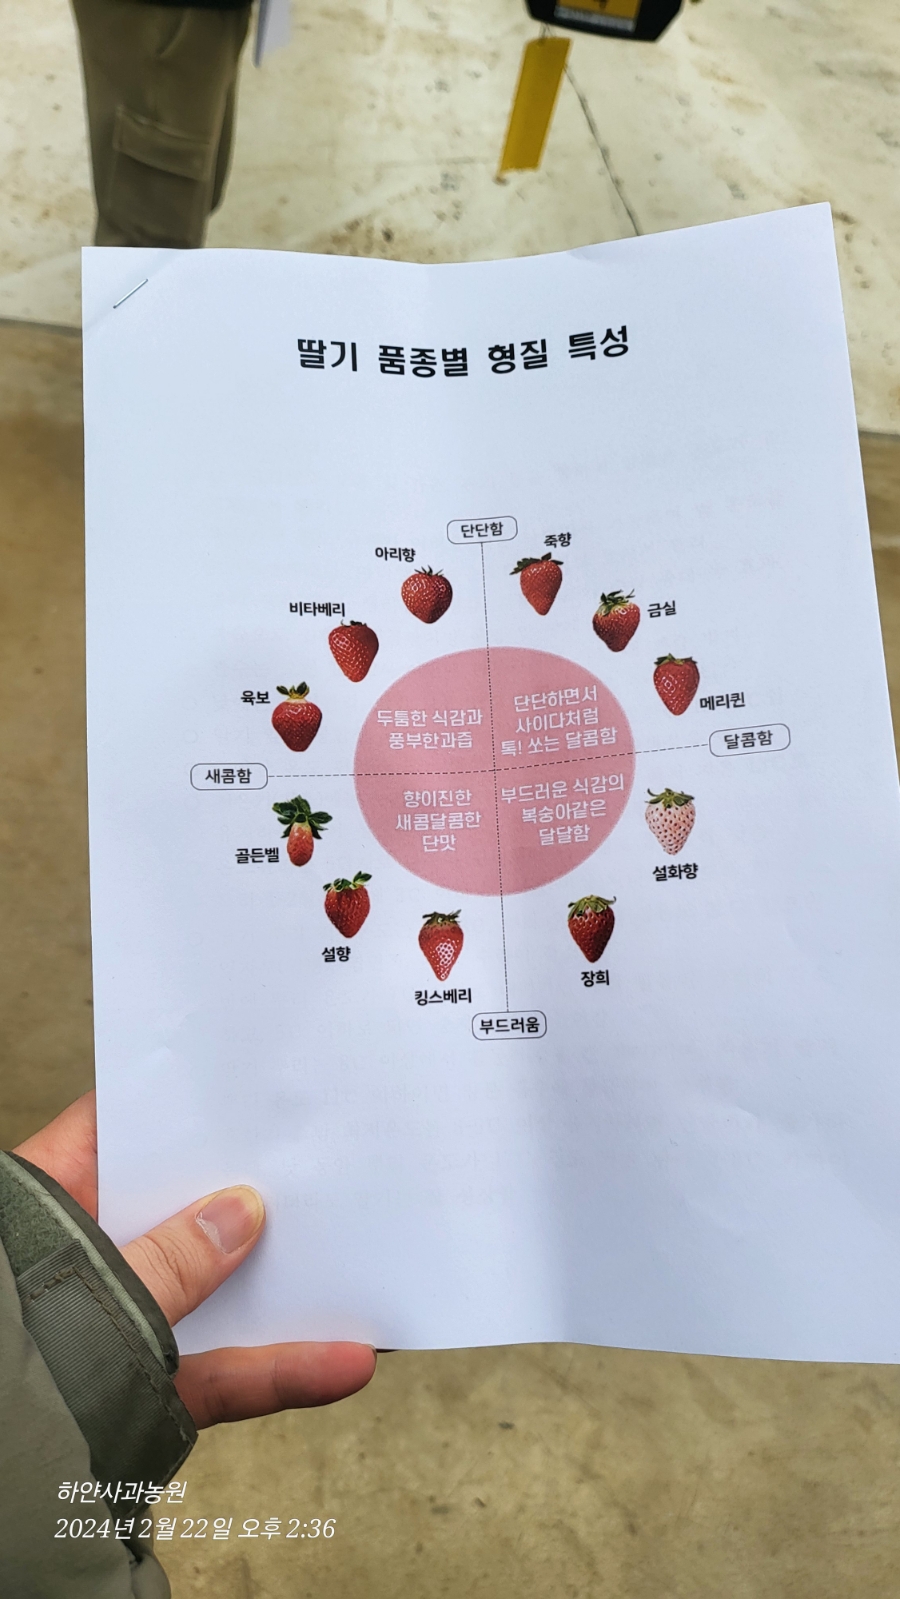 홍천 딸기 스마트팜 현장교육 - 초록새록 홍천 딸기